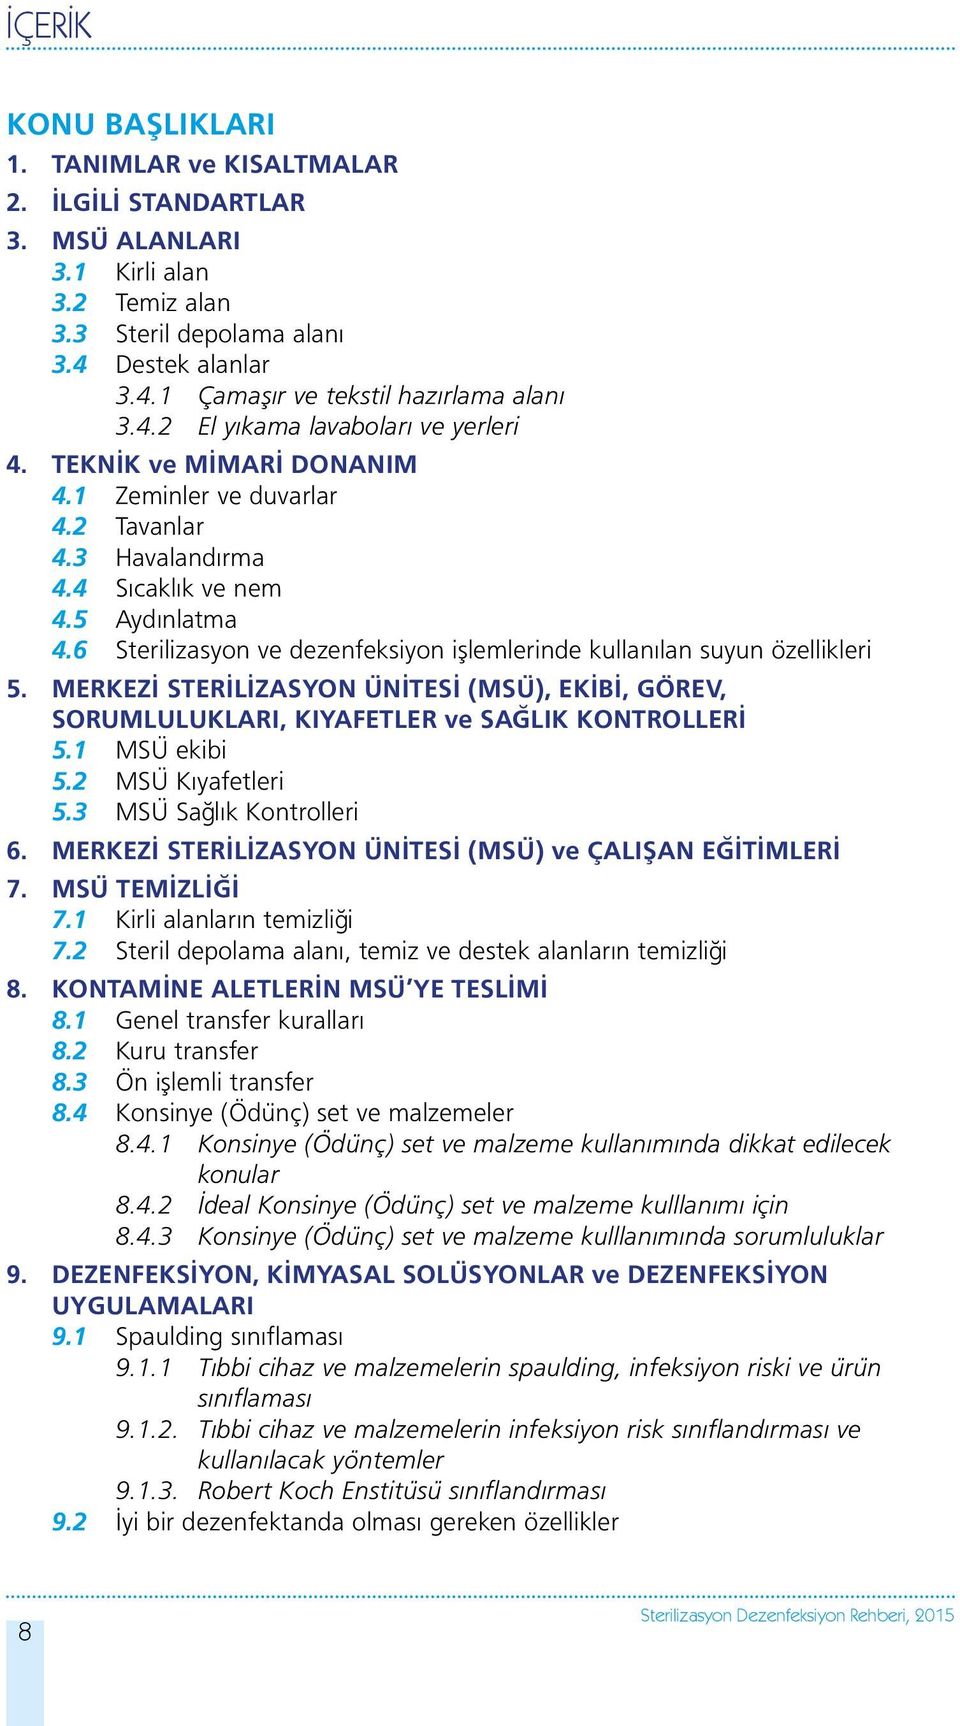 6 Sterilizasyon ve dezenfeksiyon işlemlerinde kullanılan suyun özellikleri 5. MERKEZİ STERİLİZASYON ÜNİTESİ (MSÜ), EKİBİ, GÖREV, SORUMLULUKLARI, KIYAFETLER ve SAĞLIK KONTROLLERİ 5.1 MSÜ ekibi 5.